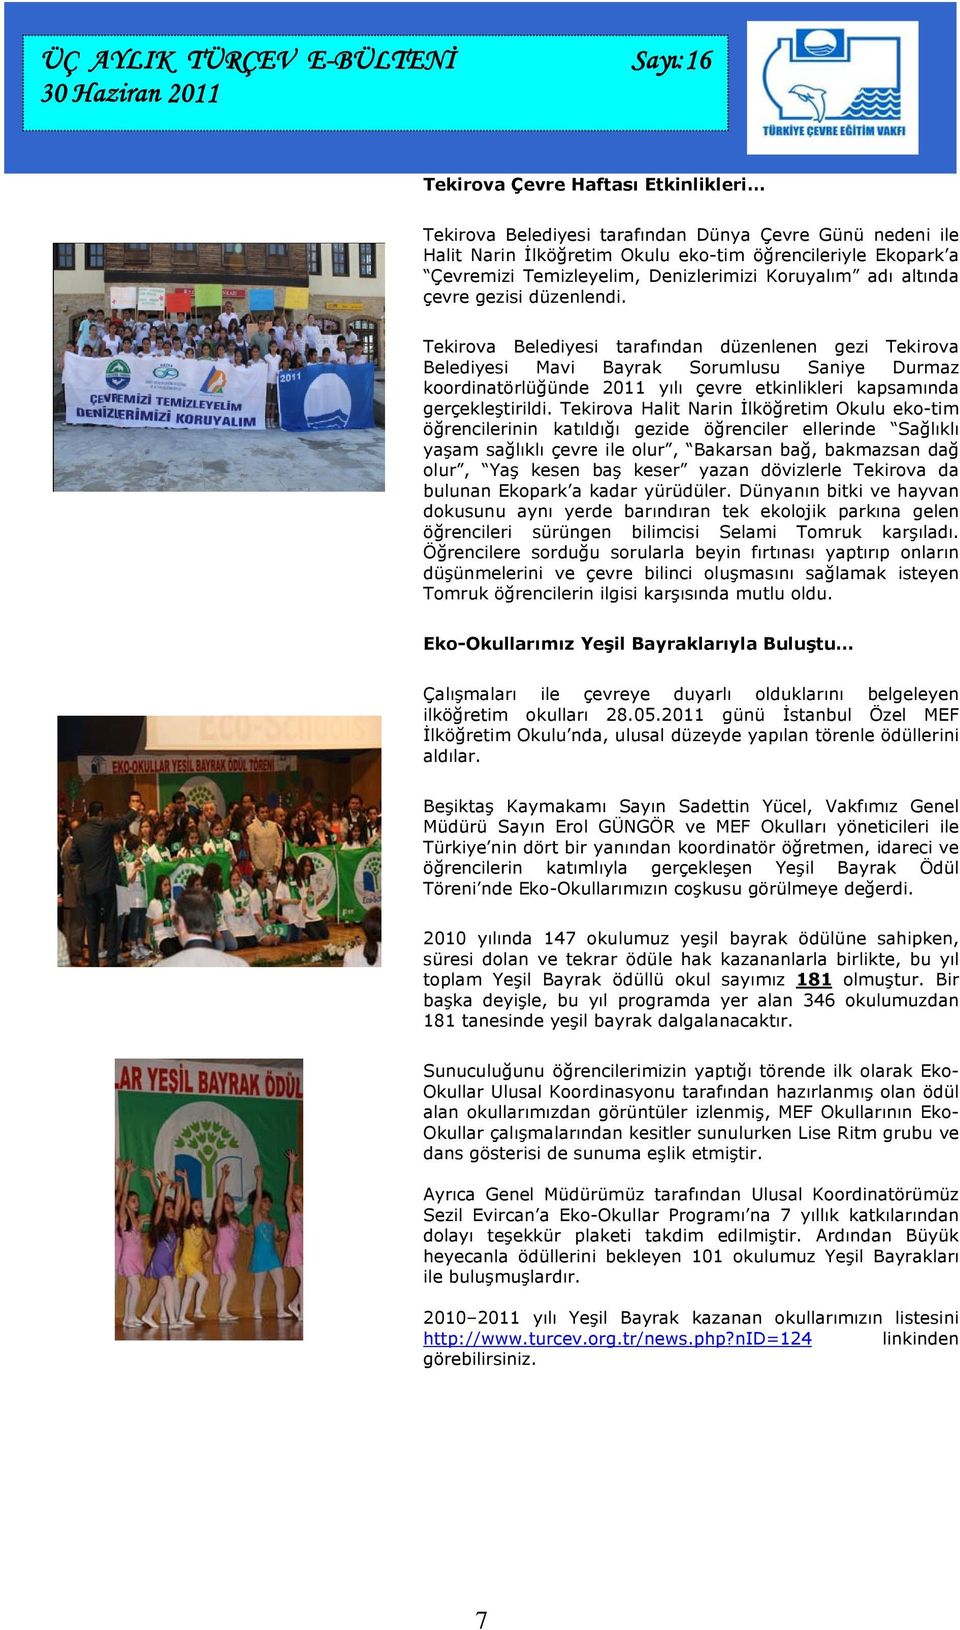 Tekirova Belediyesi tarafından düzenlenen gezi Tekirova Belediyesi Mavi Bayrak Sorumlusu Saniye Durmaz koordinatörlüğünde 2011 yılı çevre etkinlikleri kapsamında gerçekleştirildi.